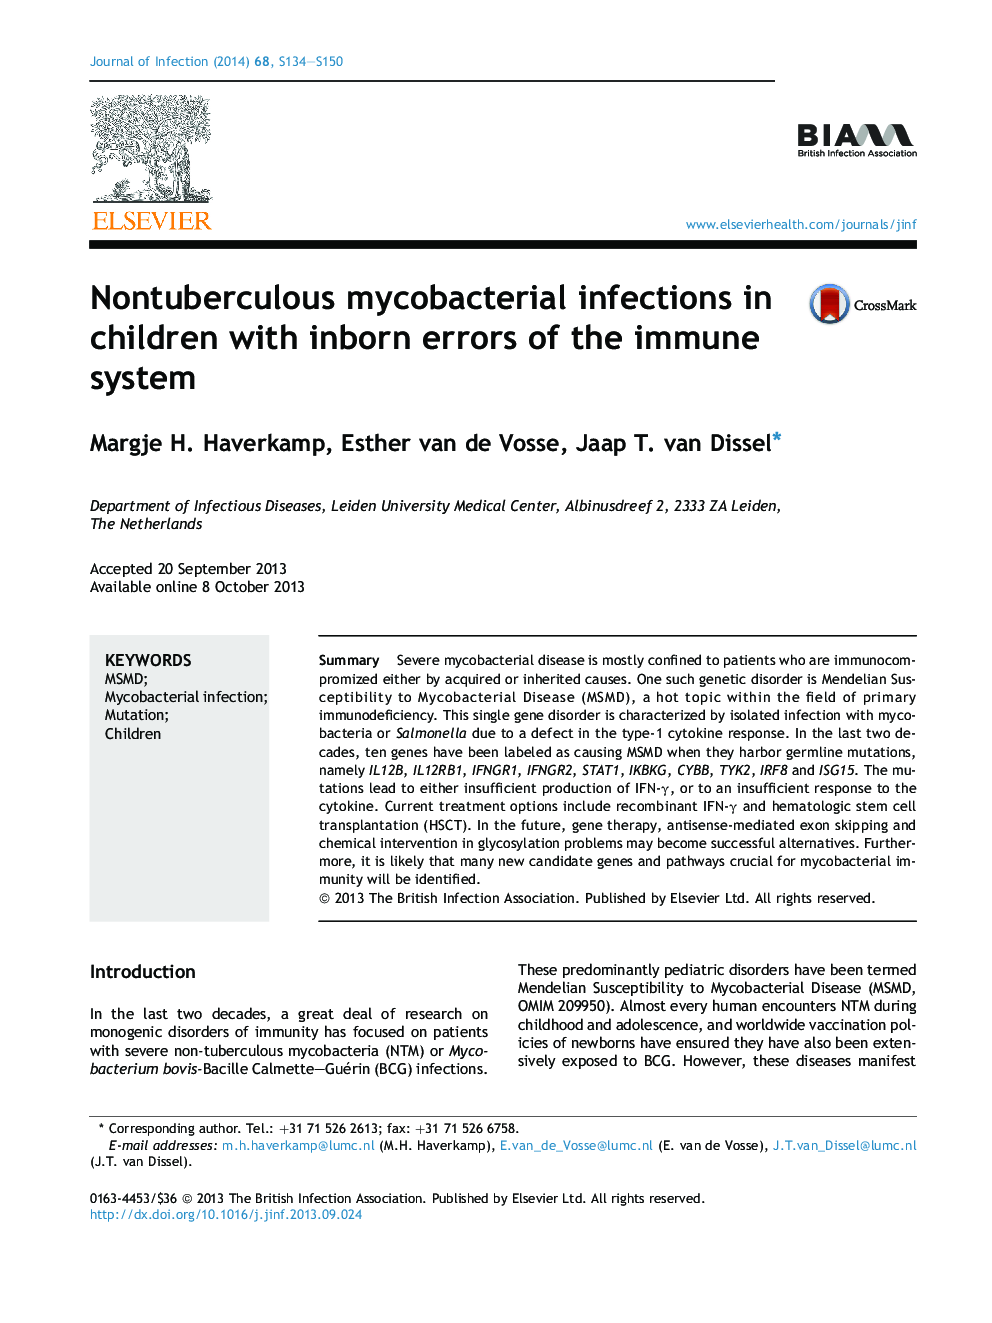 عفونتهای میکوباکتریومی غیرطبیعی در کودکان مبتلا به خطاهای مادرزادی سیستم ایمنی 